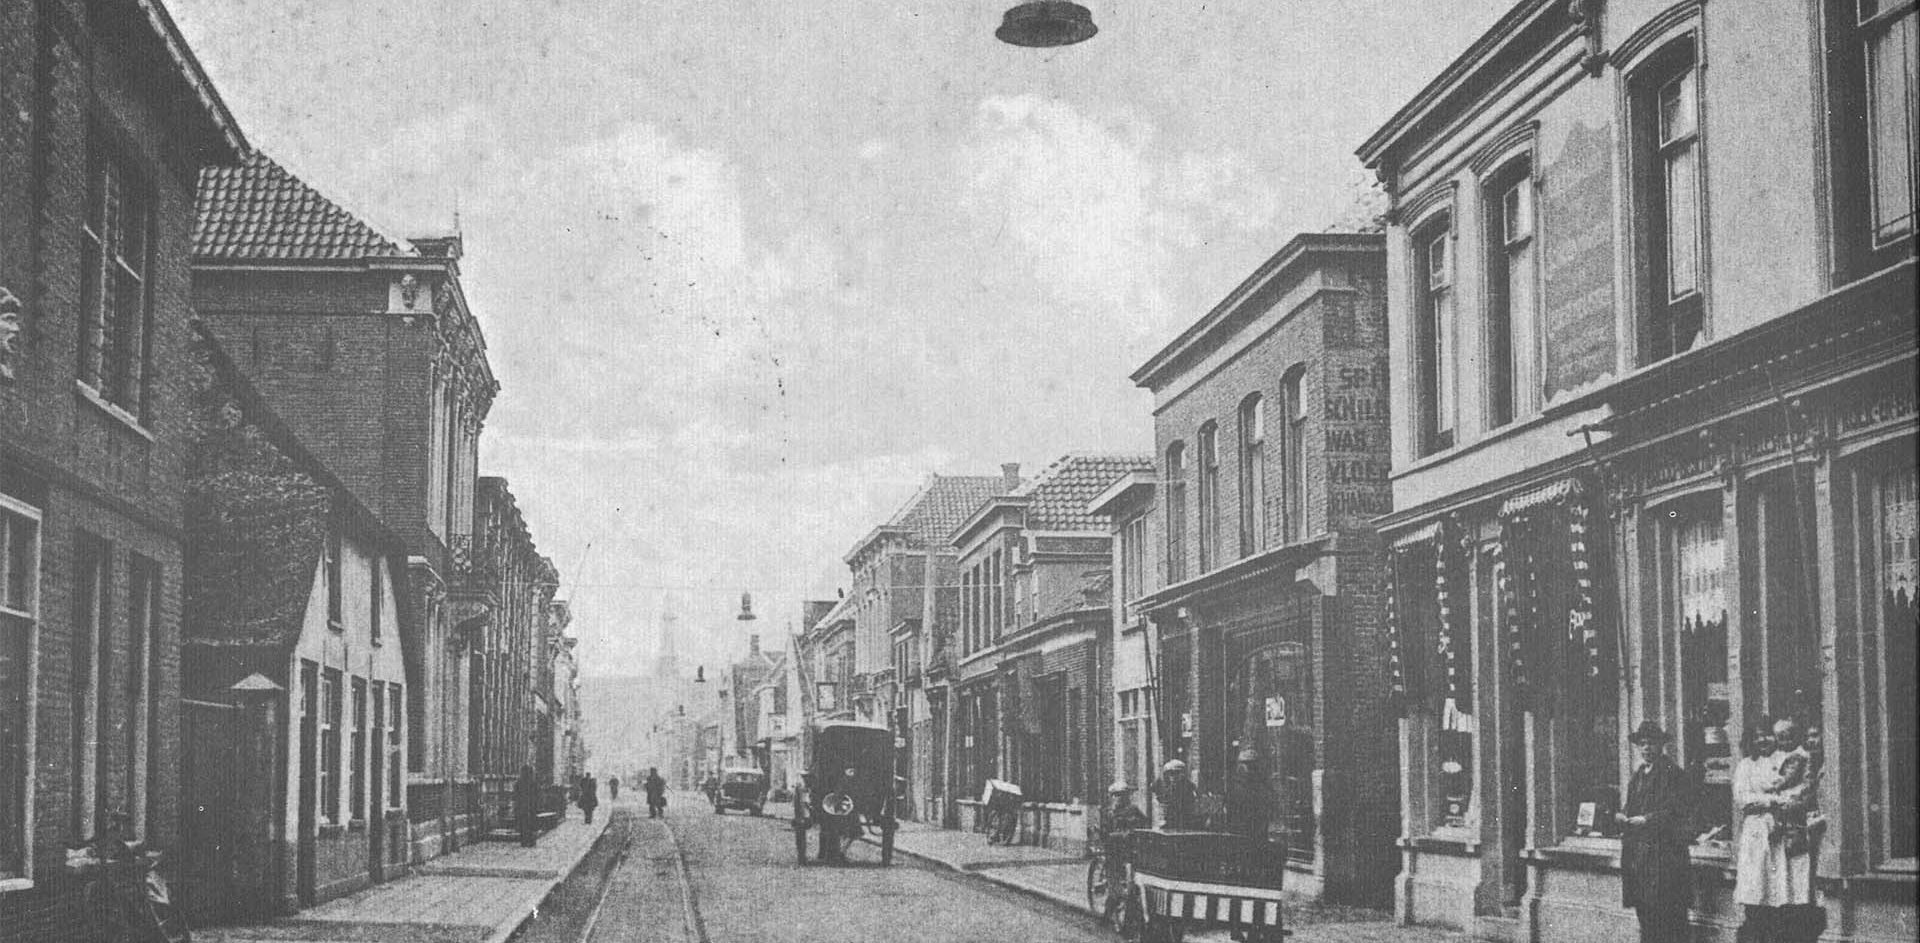 Overzicht van de Grotestraat in Waalwijk in de vorige eeuw waar reclame en beeld nog aan de gevel van een bakkerij hing